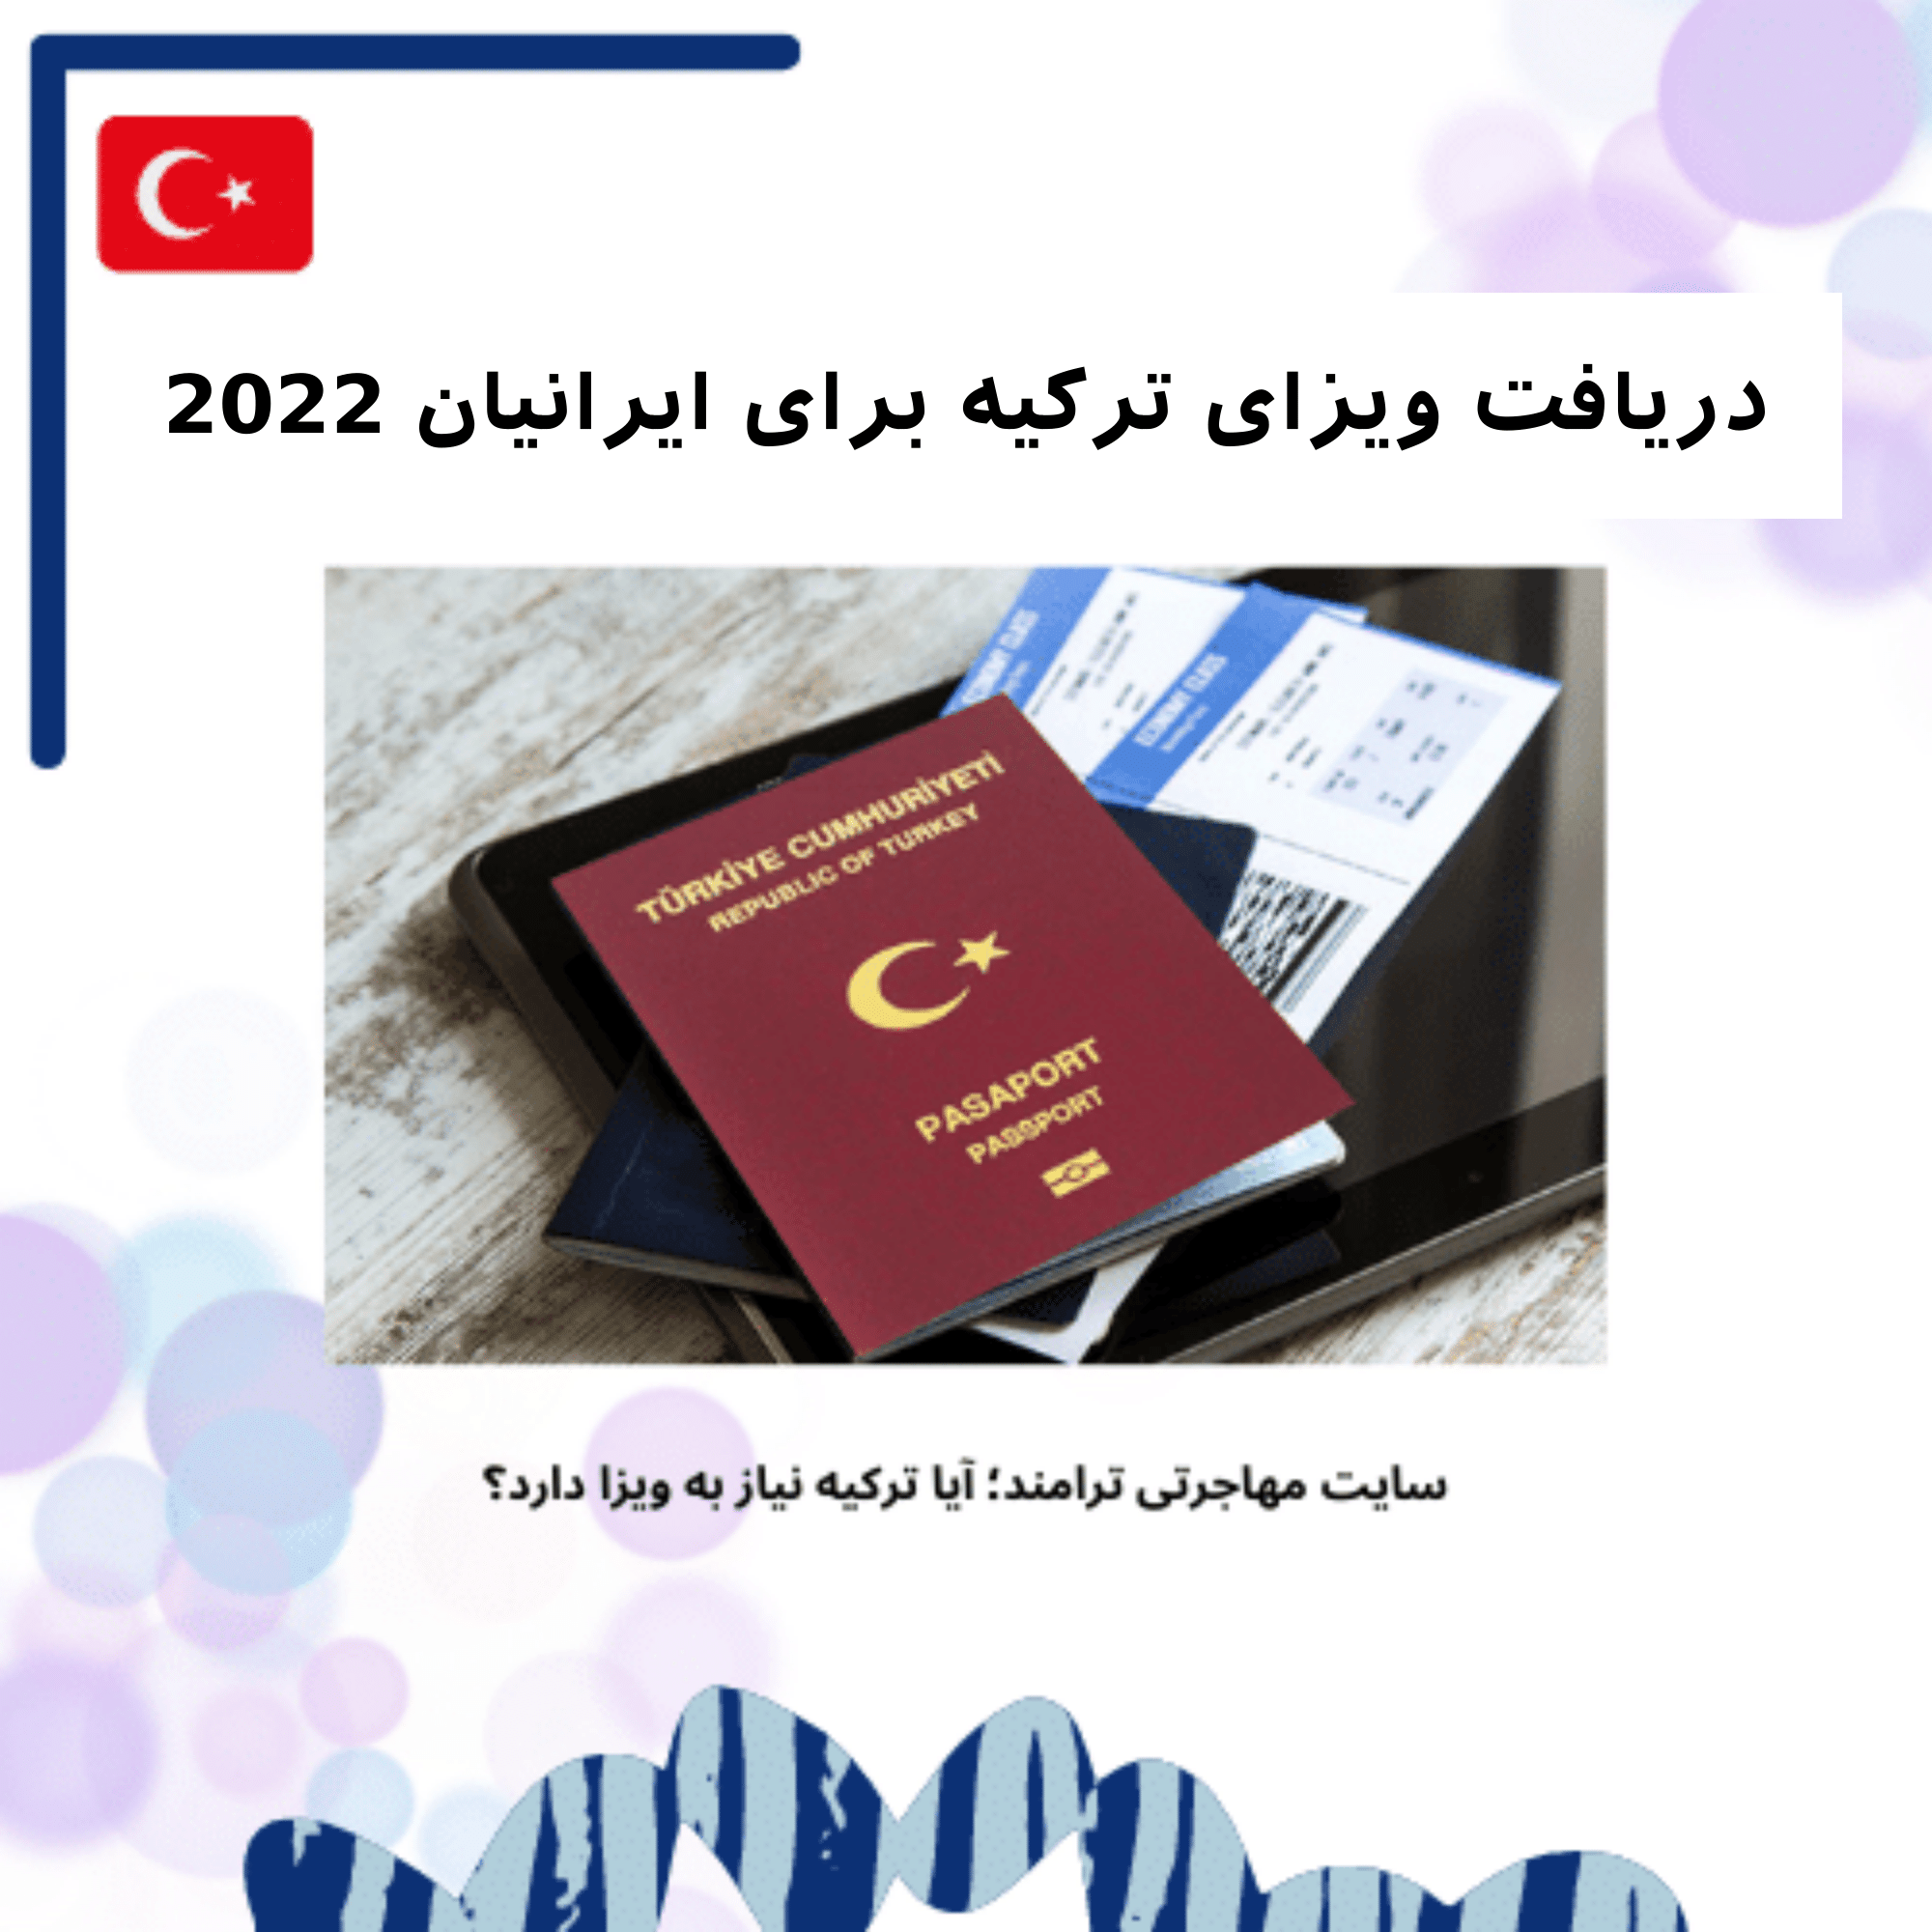 دریافت ویزای ترکیه برای ایرانیان - آیا دریافت ویزا لازم است؟